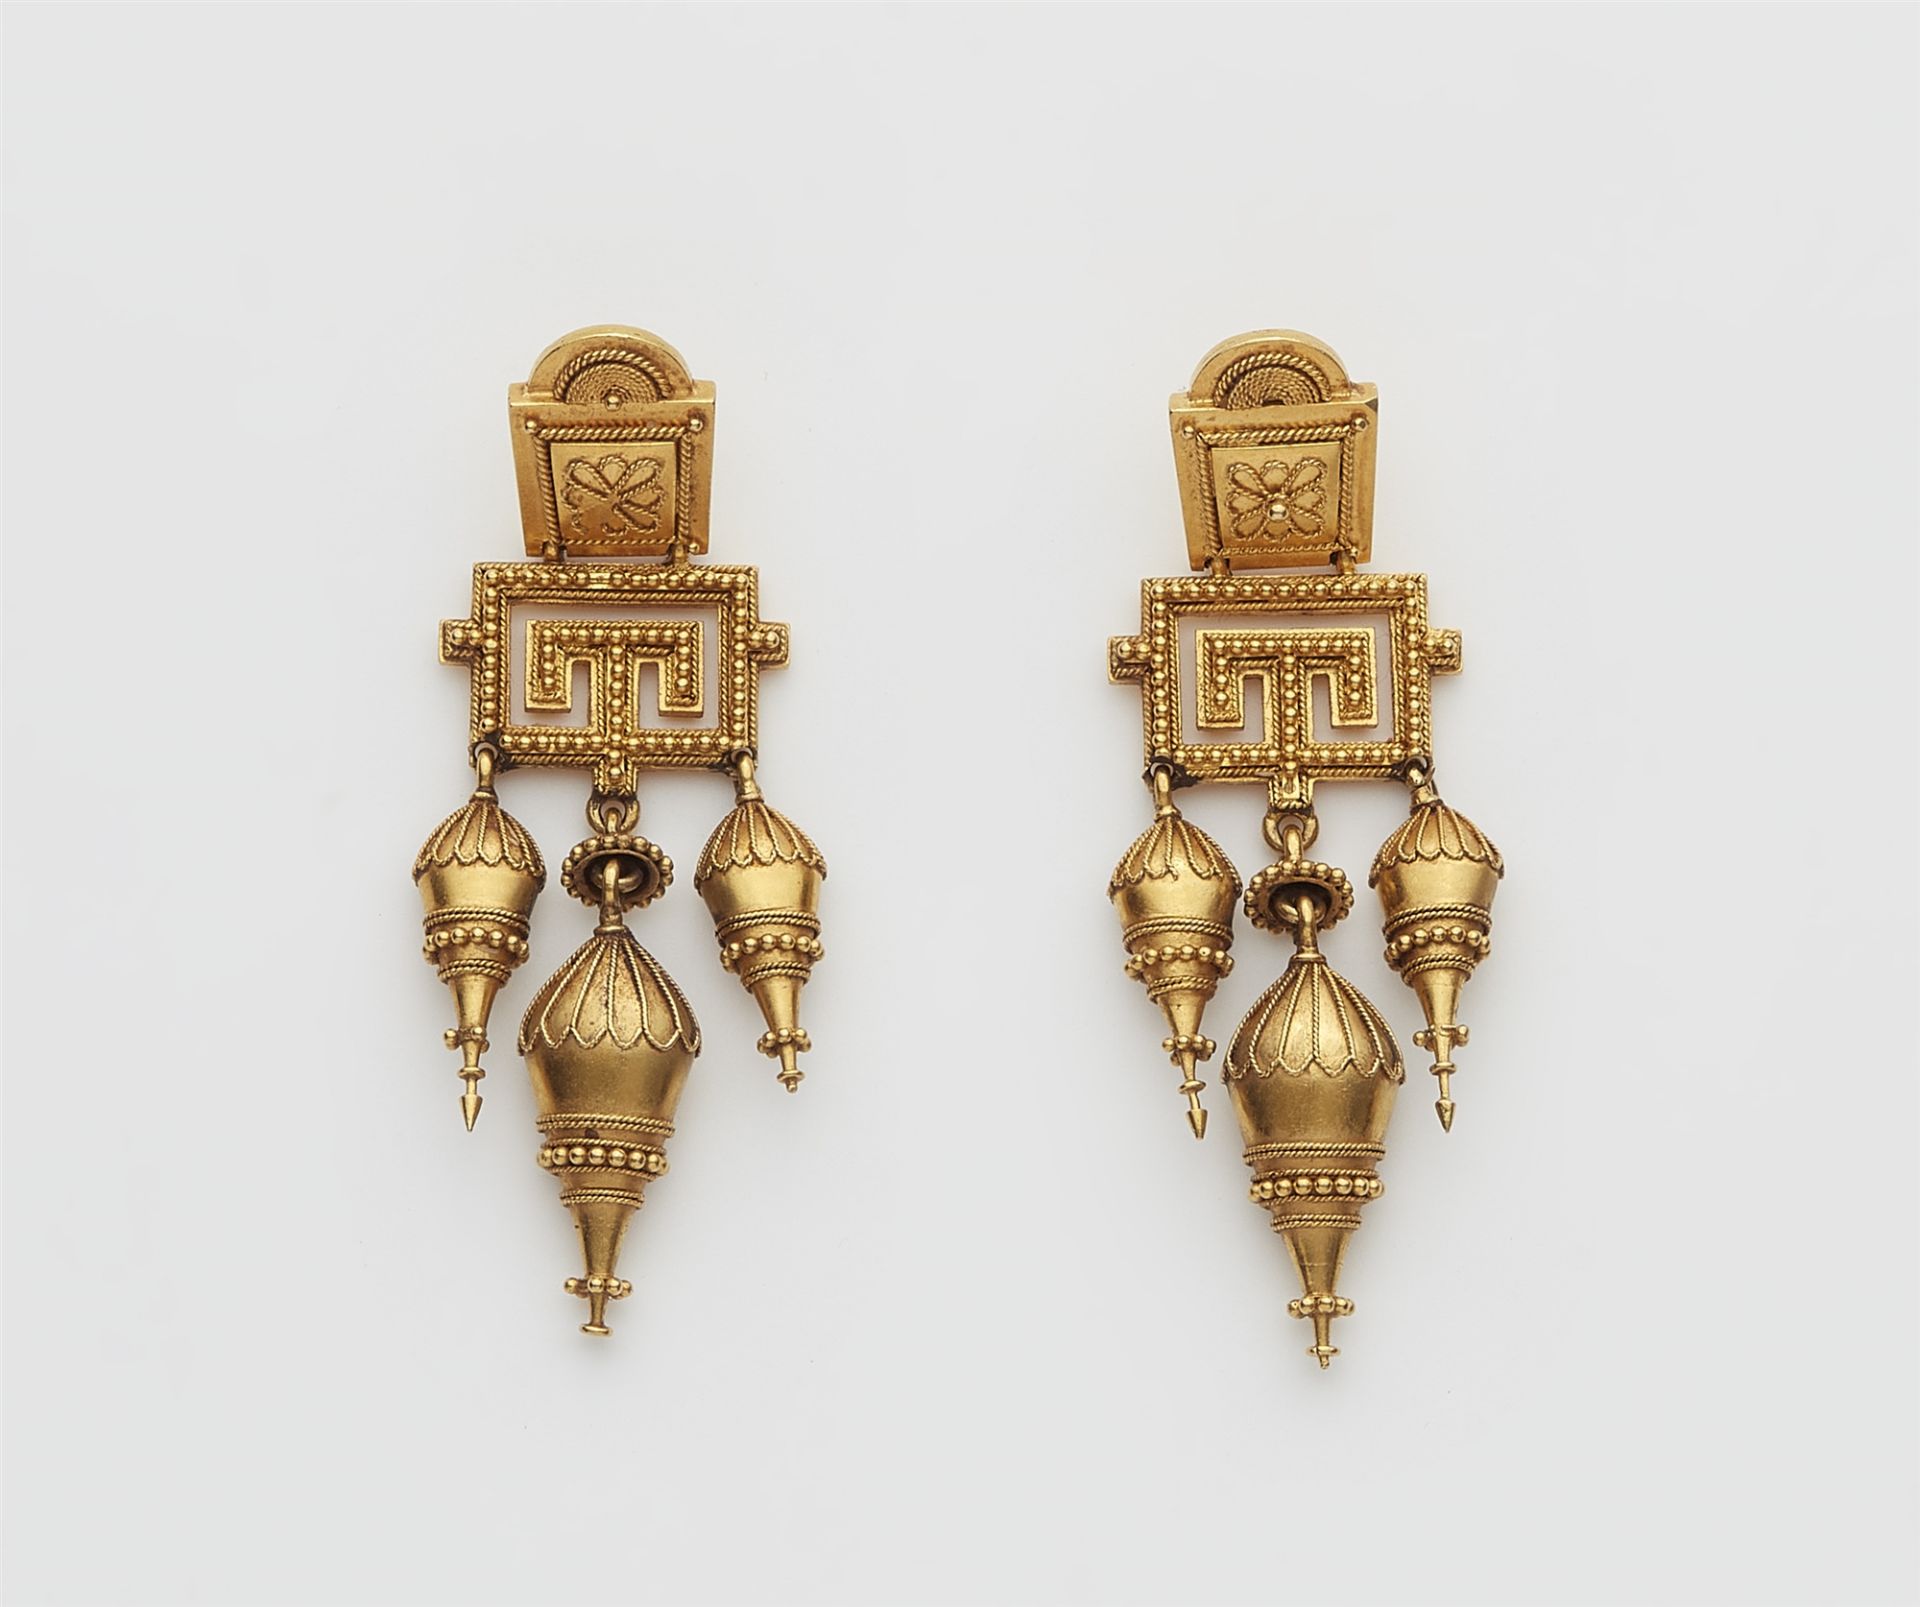 Paar neoetruskische Pendeloque-Ohrringe